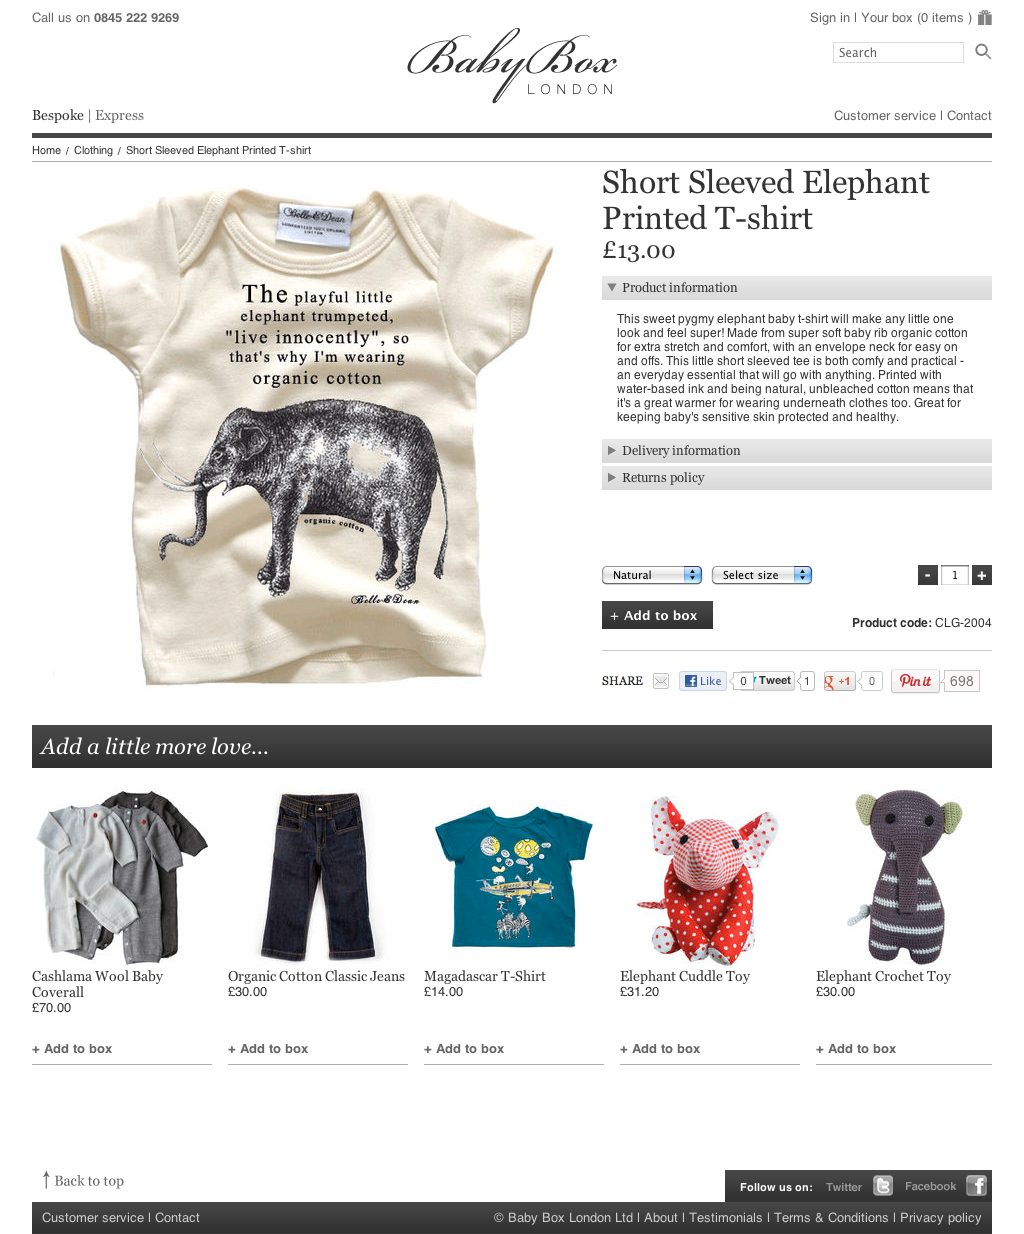 Adobe Portfolio baby box luxury gifts family